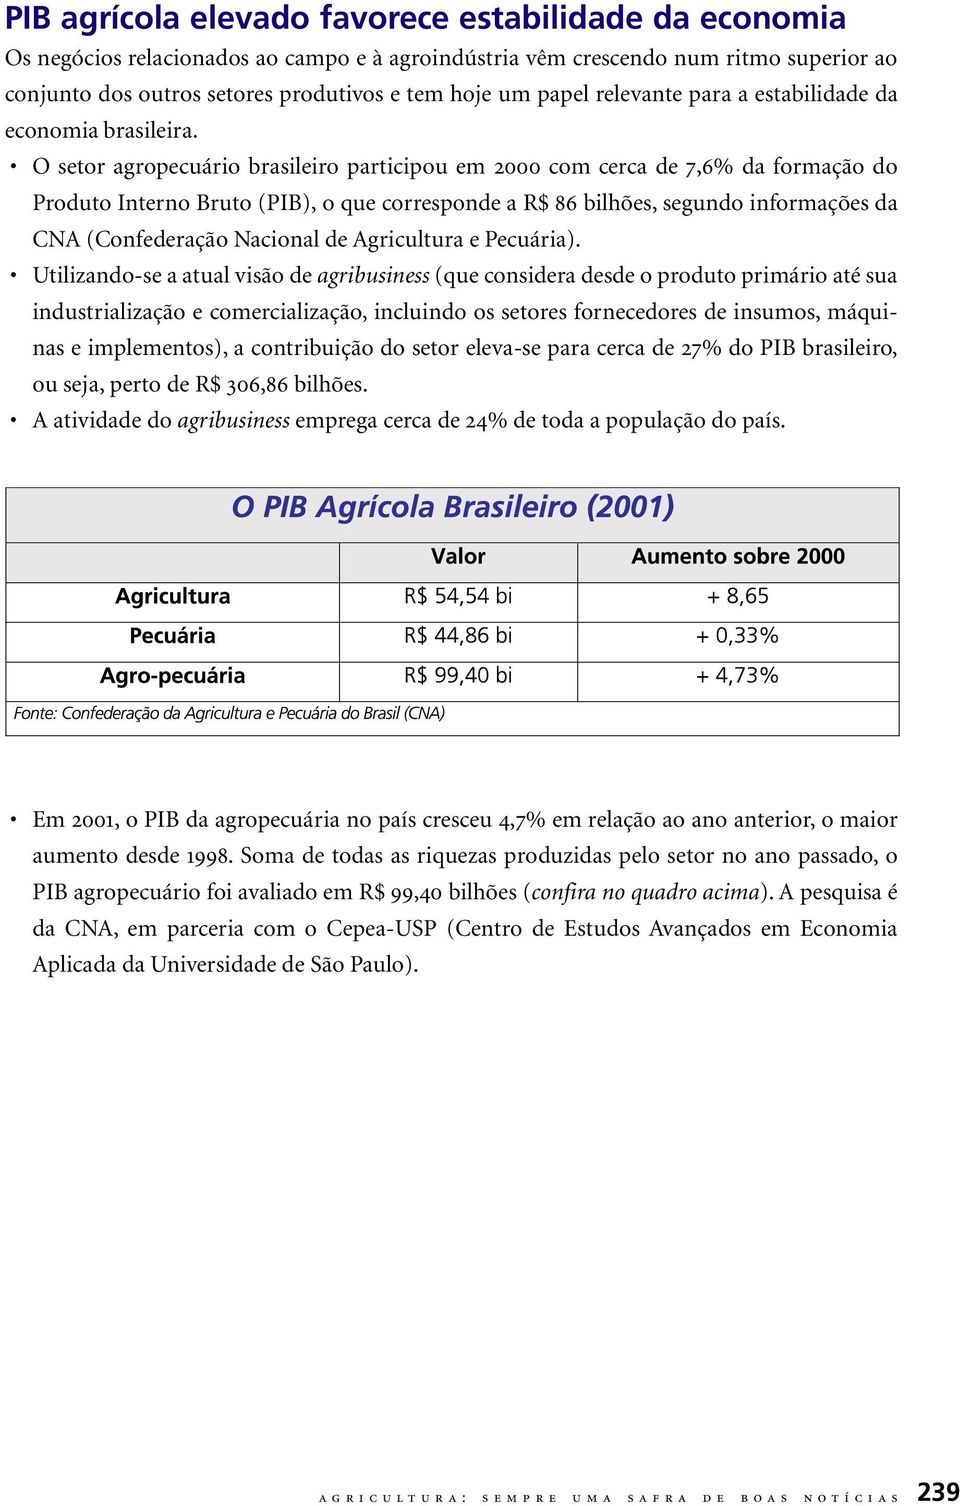 O setor agropecuário brasileiro participou em 2000 com cerca de 7,6% da formação do Produto Interno Bruto (PIB), o que corresponde a R$ 86 bilhões, segundo informações da CNA (Confederação Nacional